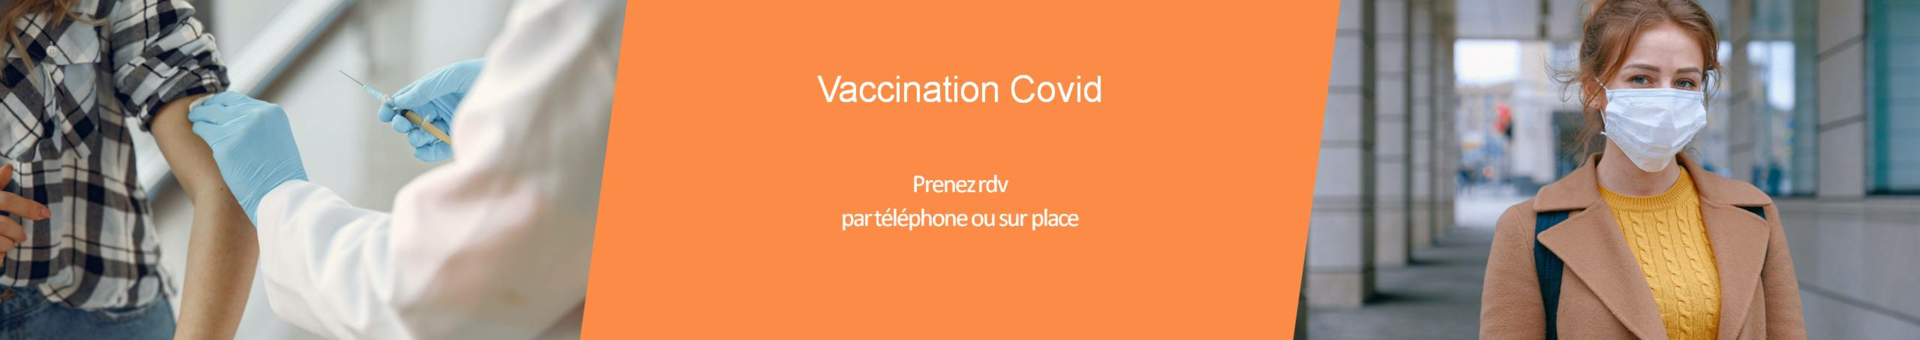 Deux personnes avec pansement après vaccination contre la covid-19